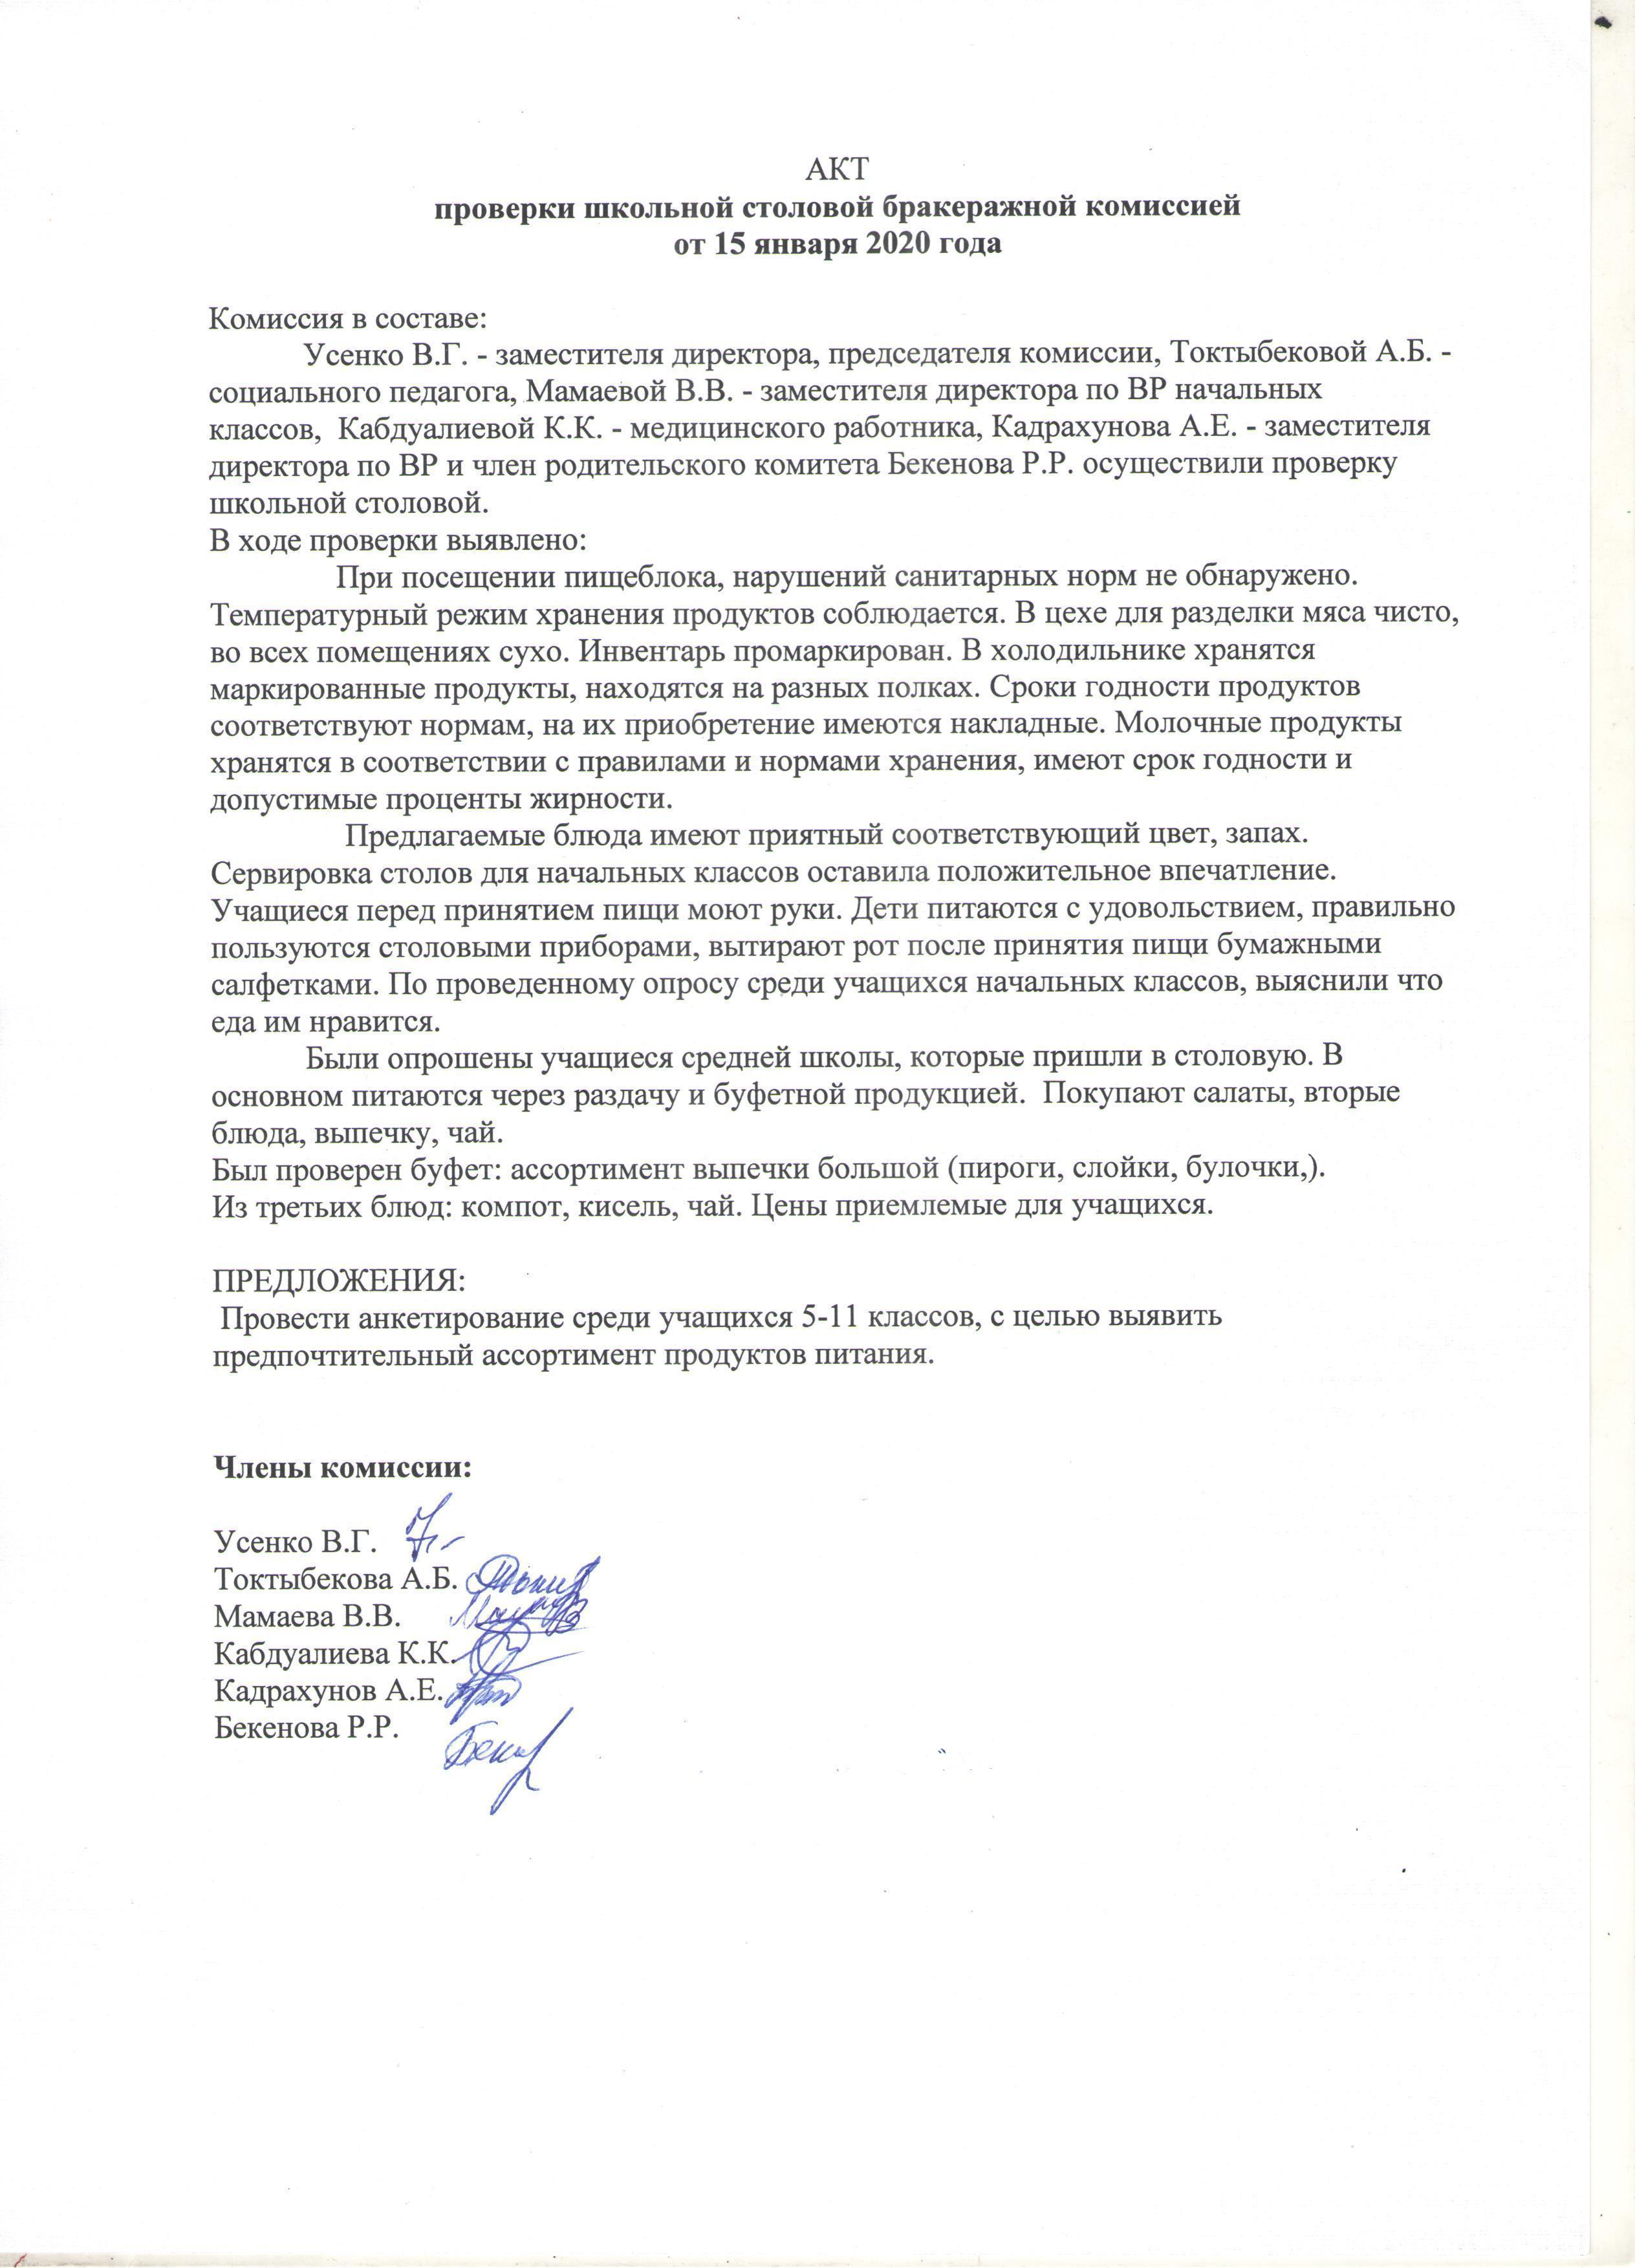 Акт проверки школьной столовой бракеражной комиссией от 15.01.2020